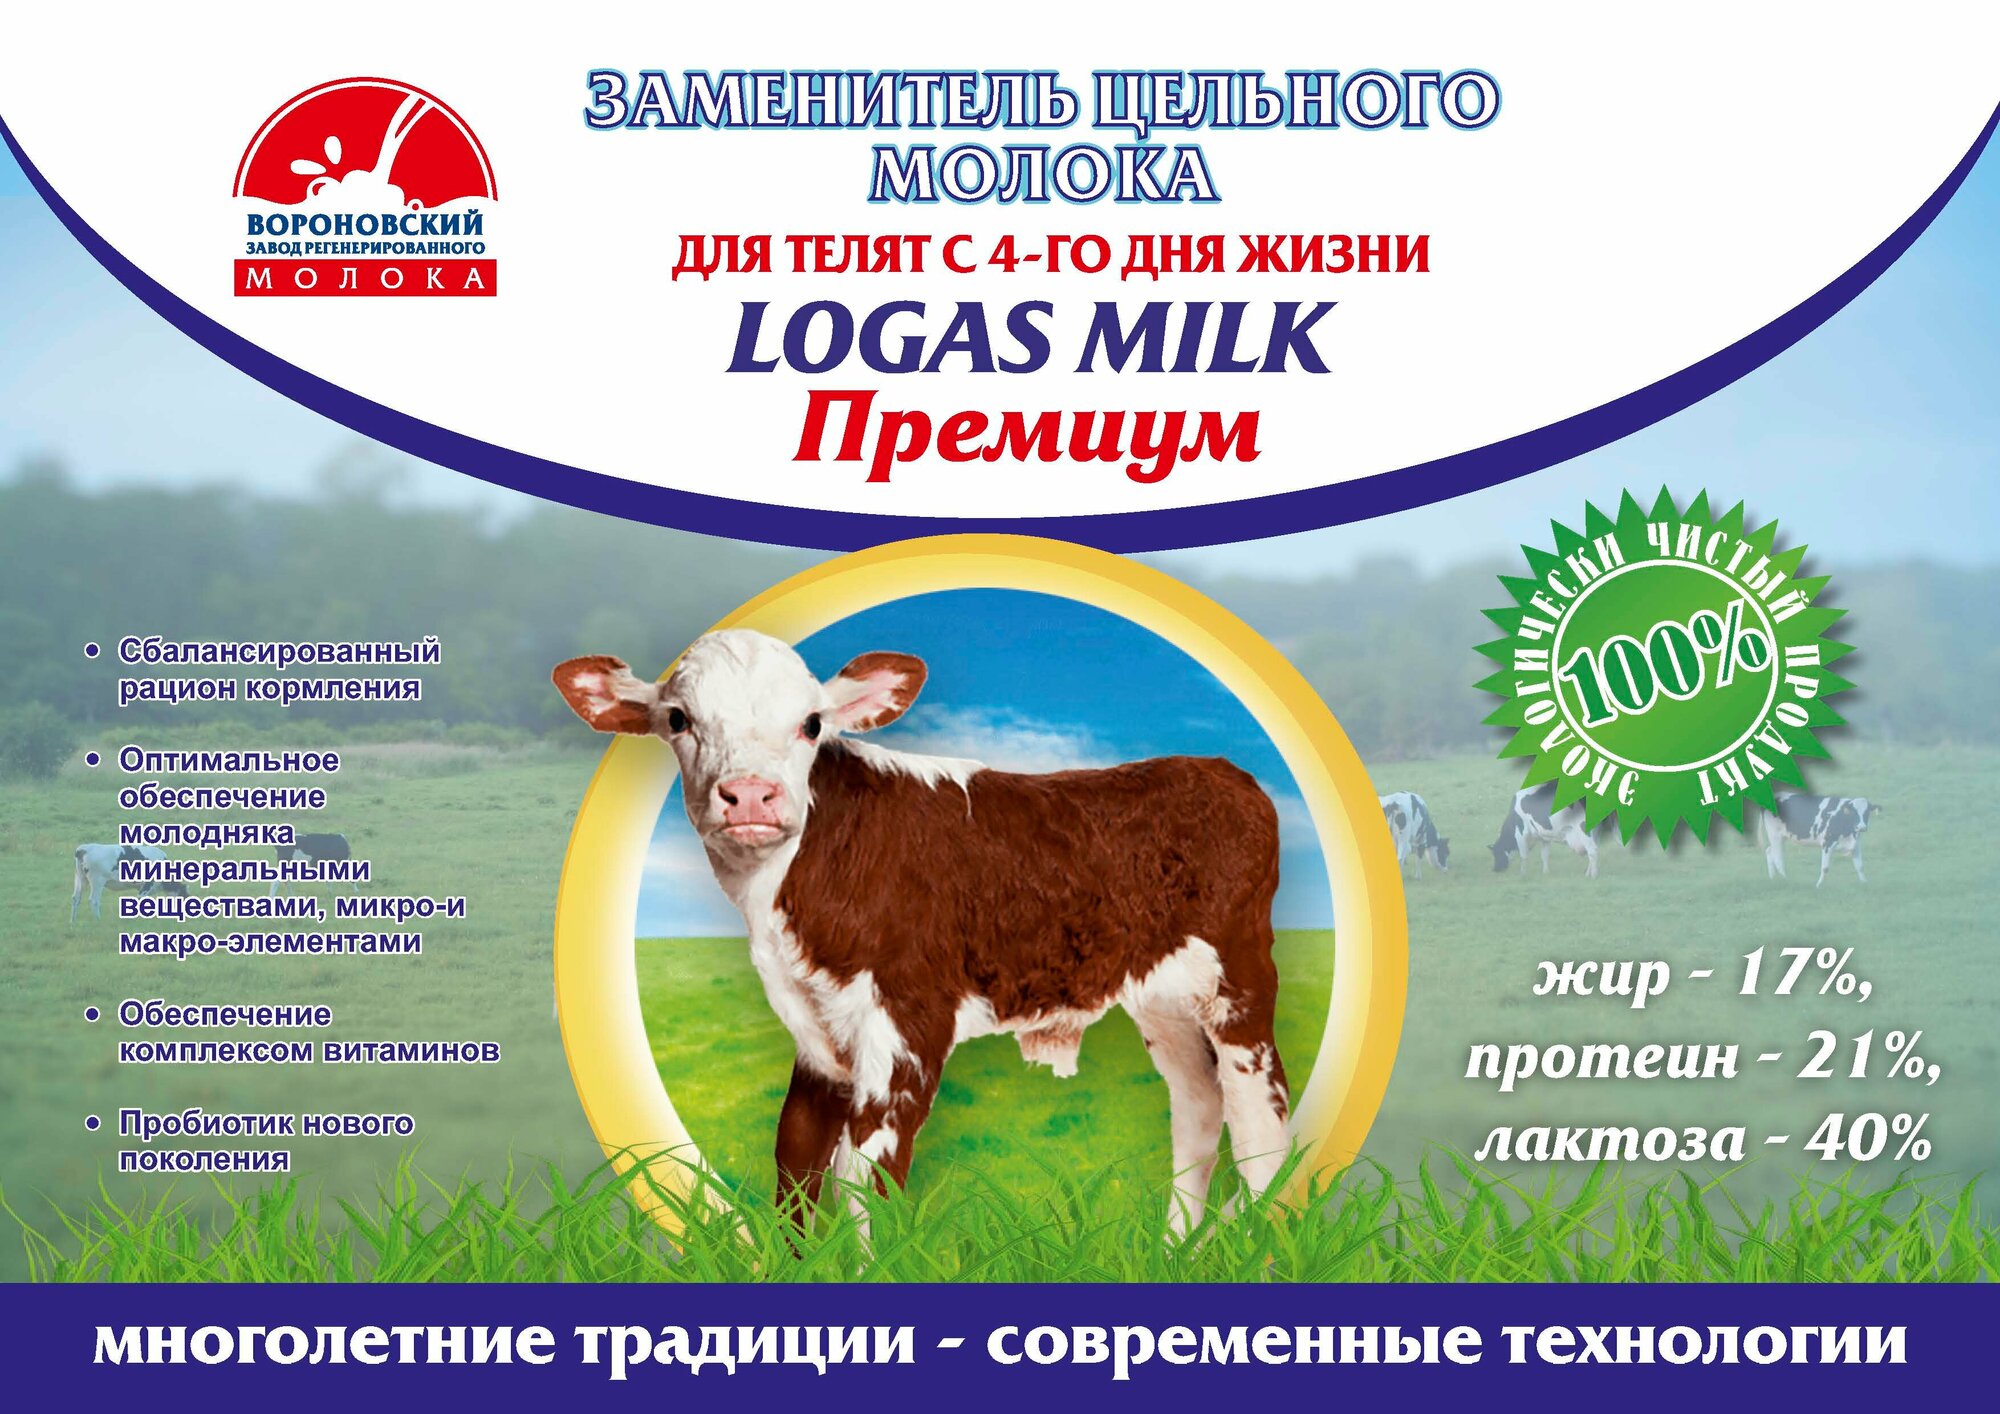 Заменитель цельного молока LOGAS MILK премиум, для телят, ведро